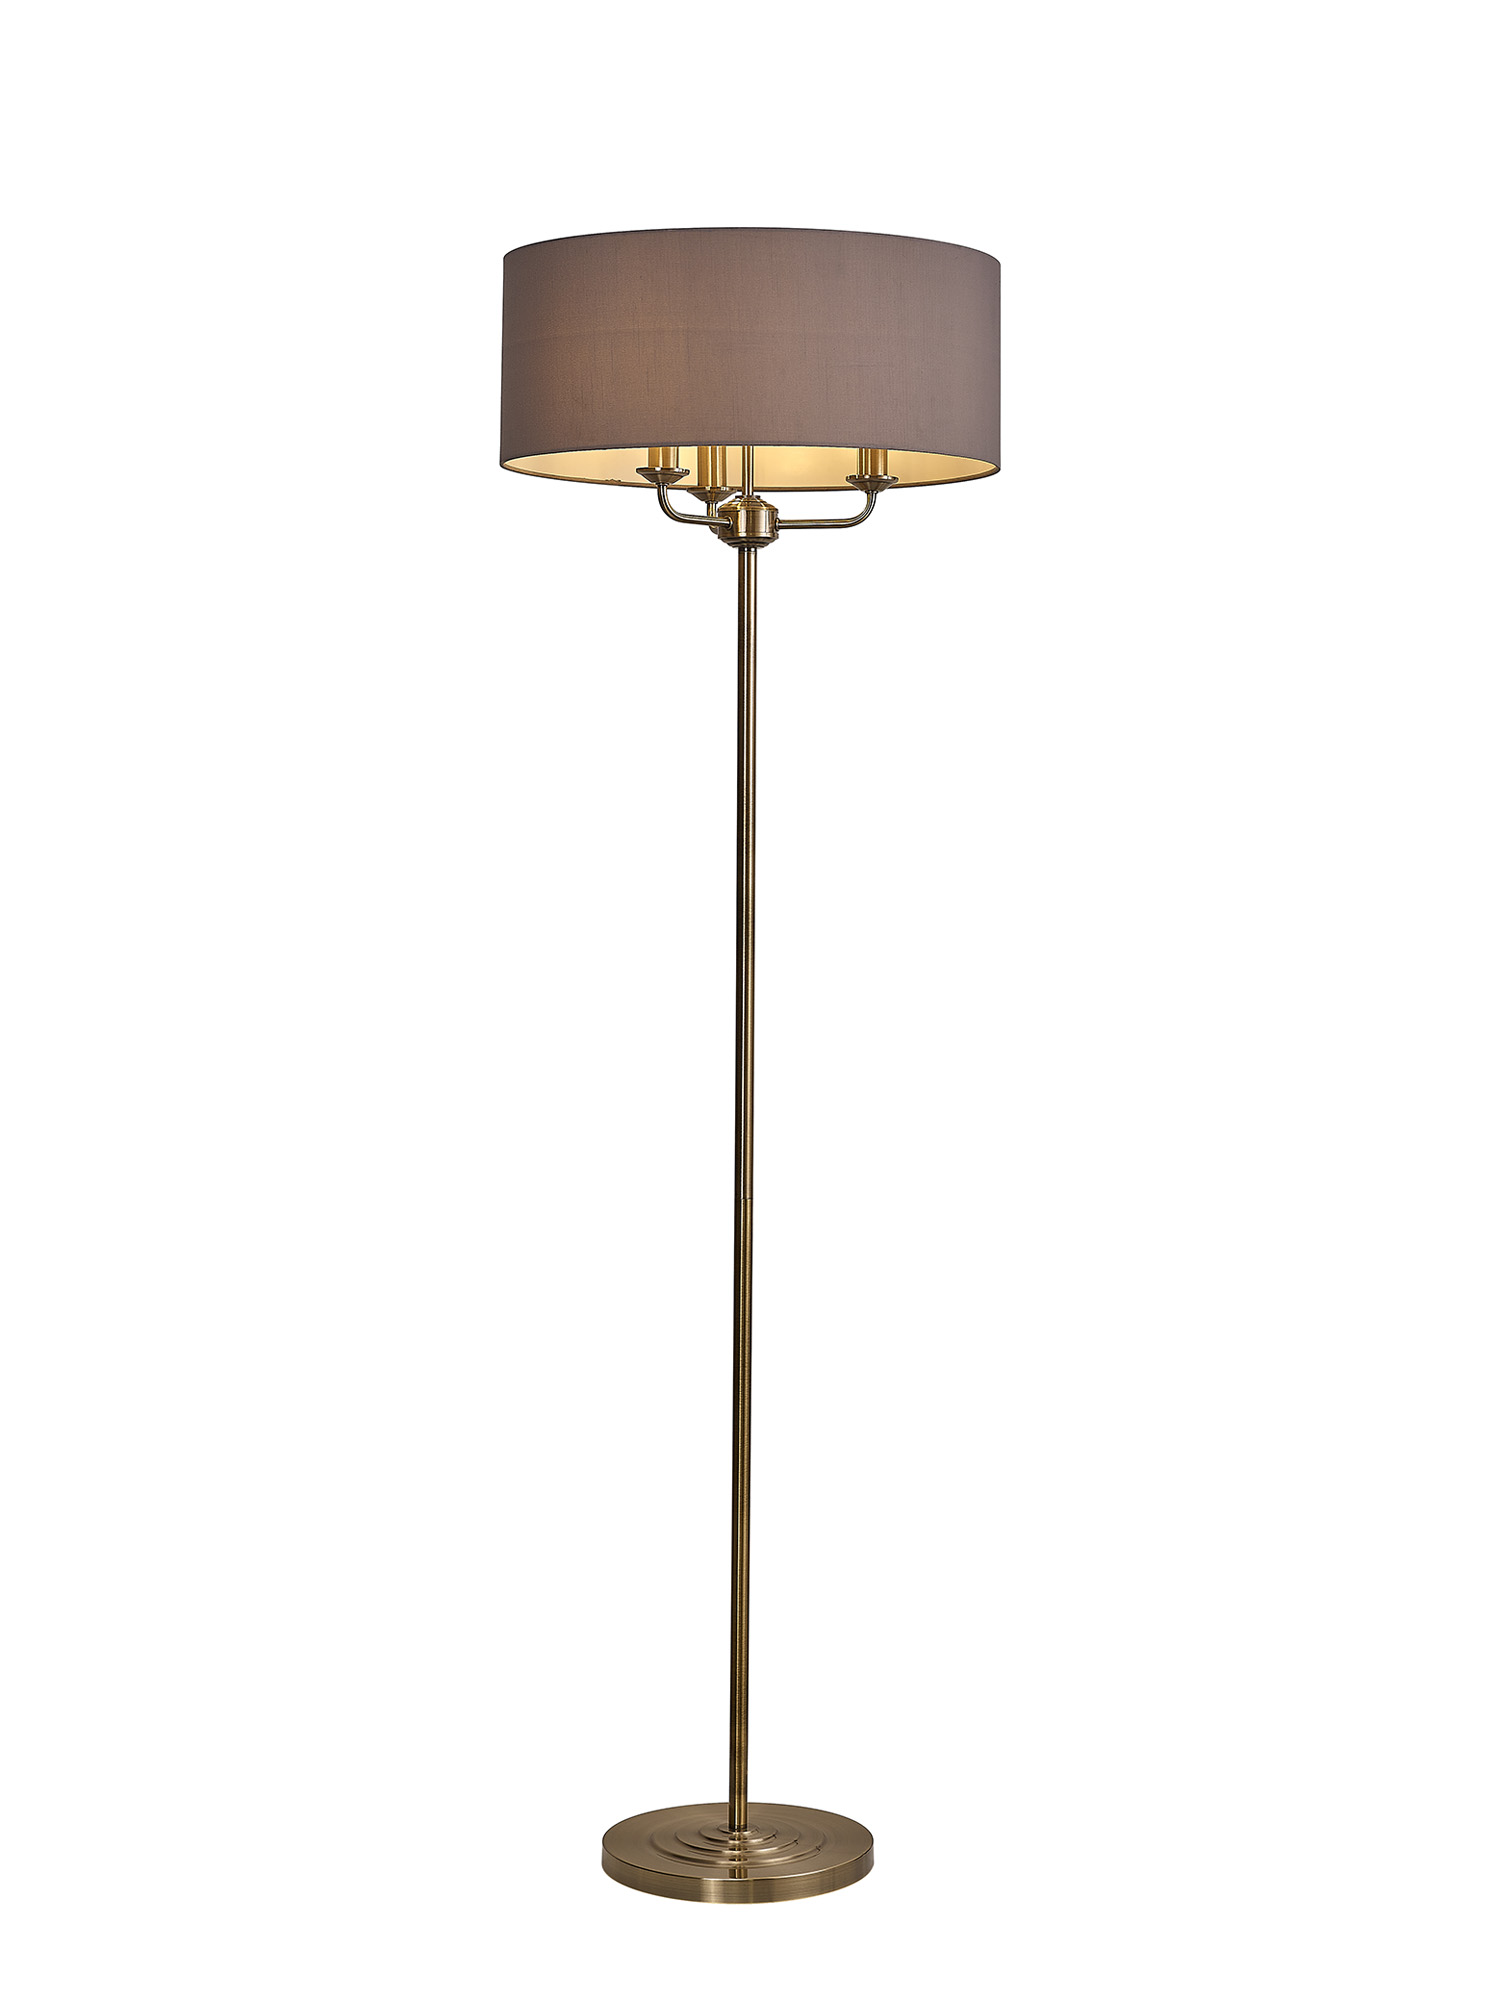 DK0914  Banyan 45cm 3 Light Floor Lamp Antique Brass, Grey